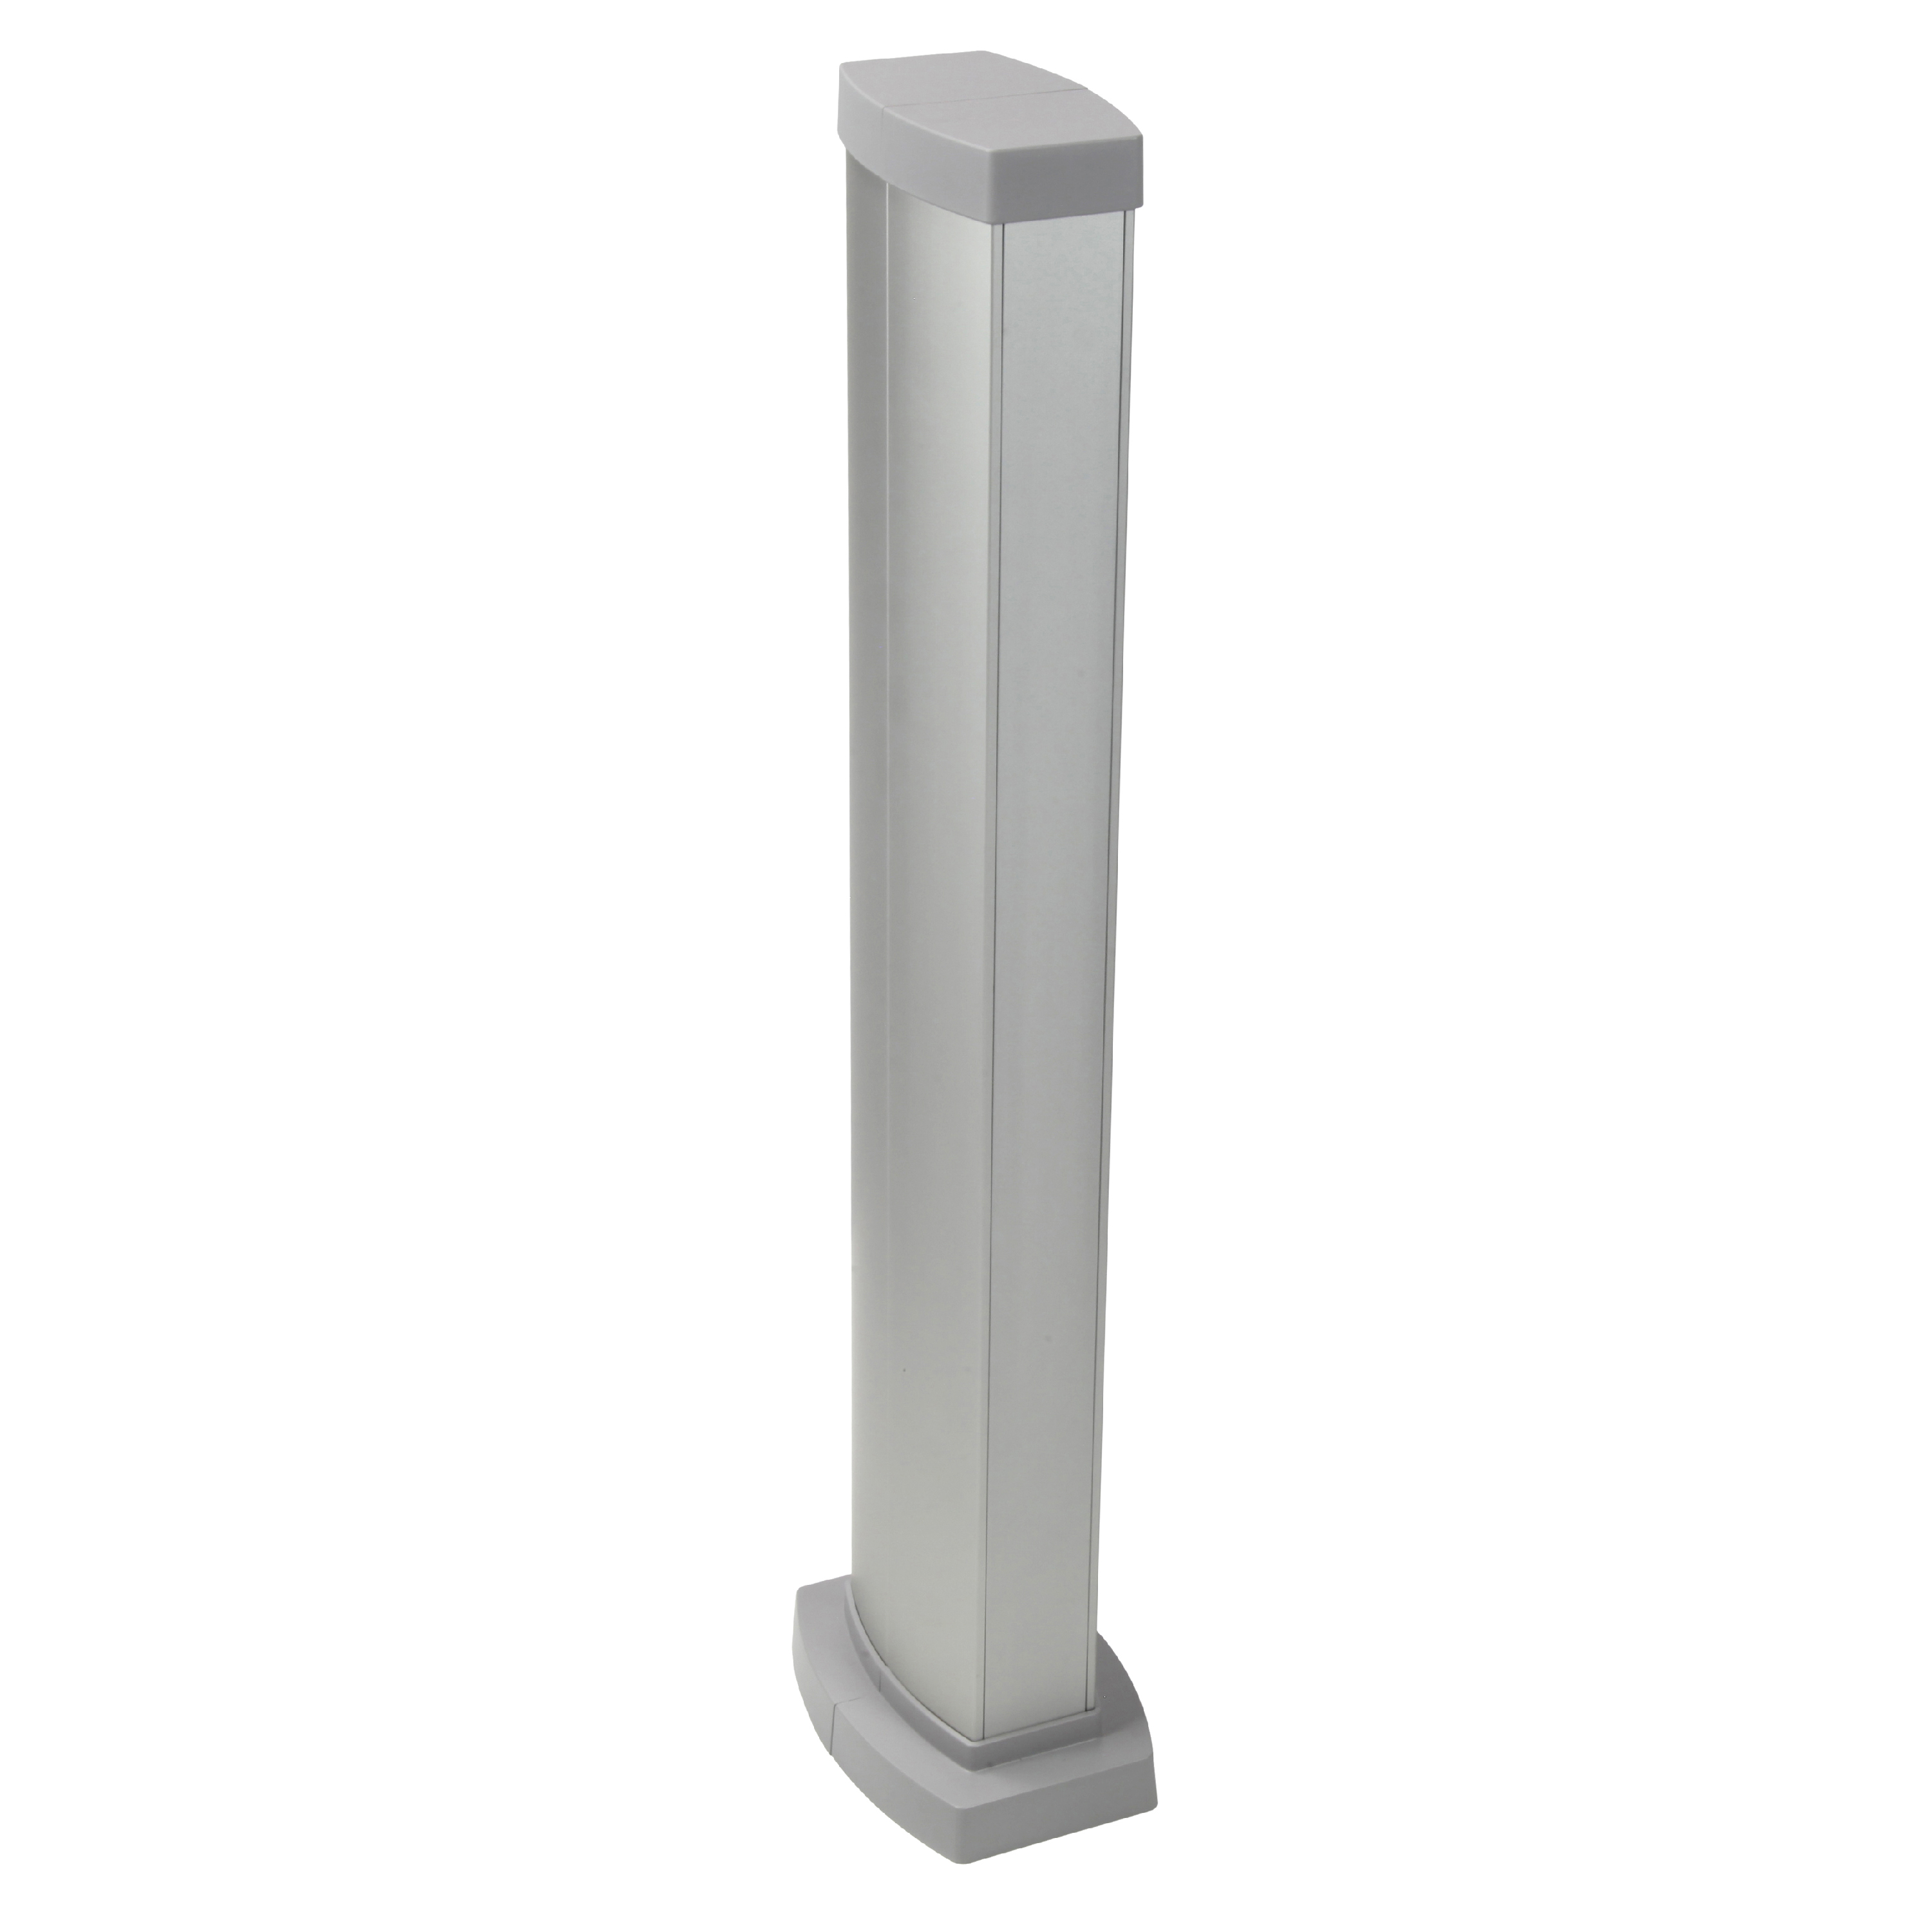 Legrand Snap-On мини-колонна алюминиевая с крышкой из алюминия, 2 секции, высота 0,68 метра, цвет алюминий